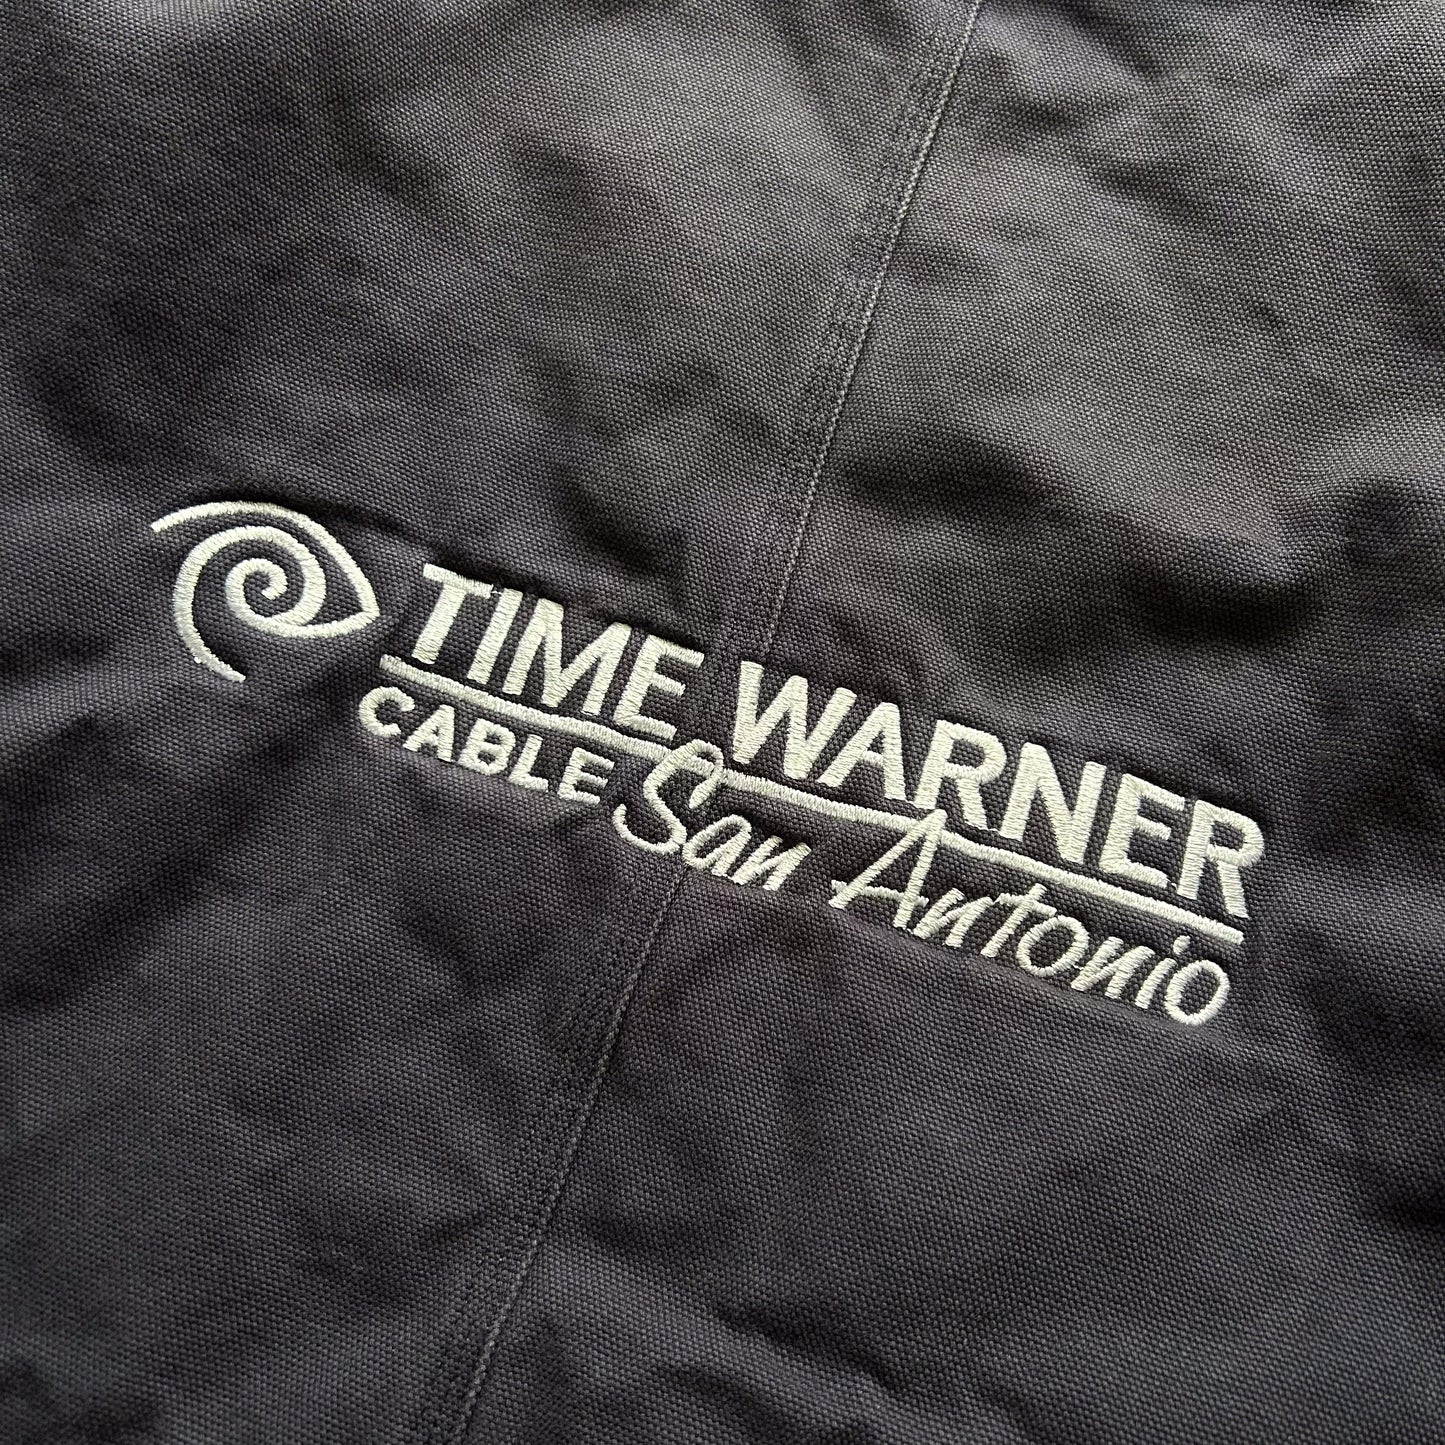 1990s - vintage 'time warner' work-wear jacket